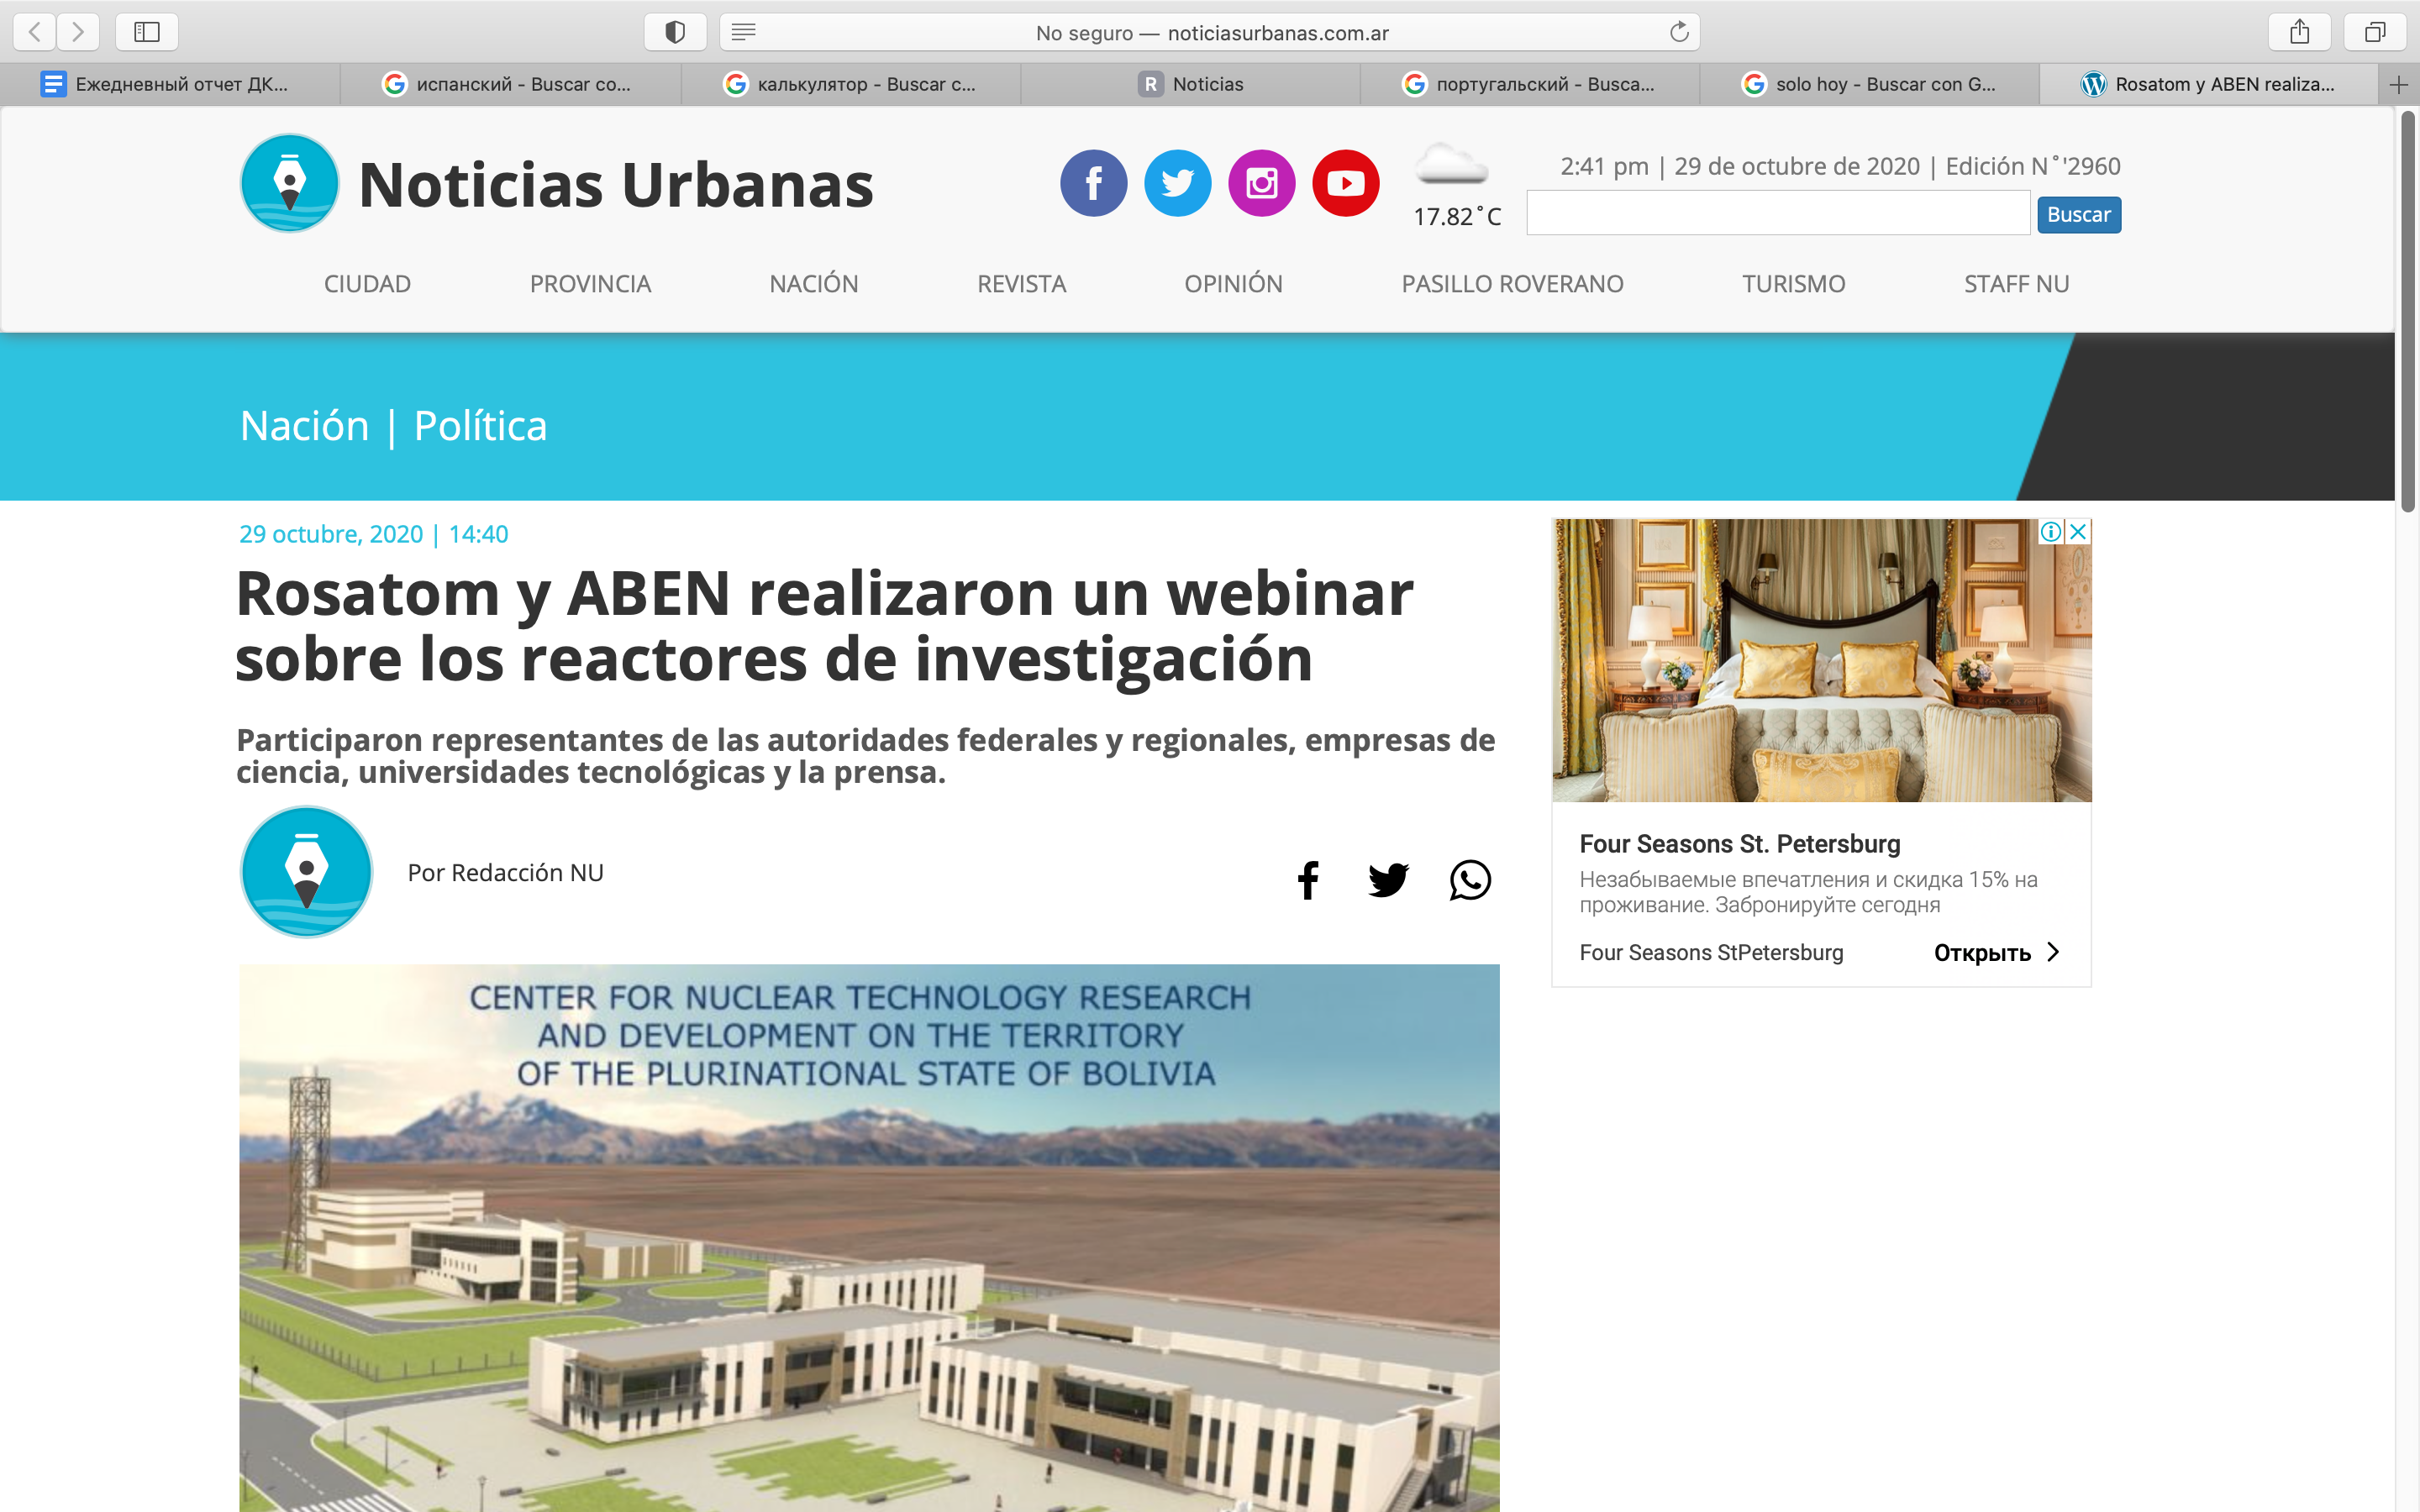 Rosatom y ABEN realizaron un webinar sobre los reactores de investigación (Noticias Urbanas)